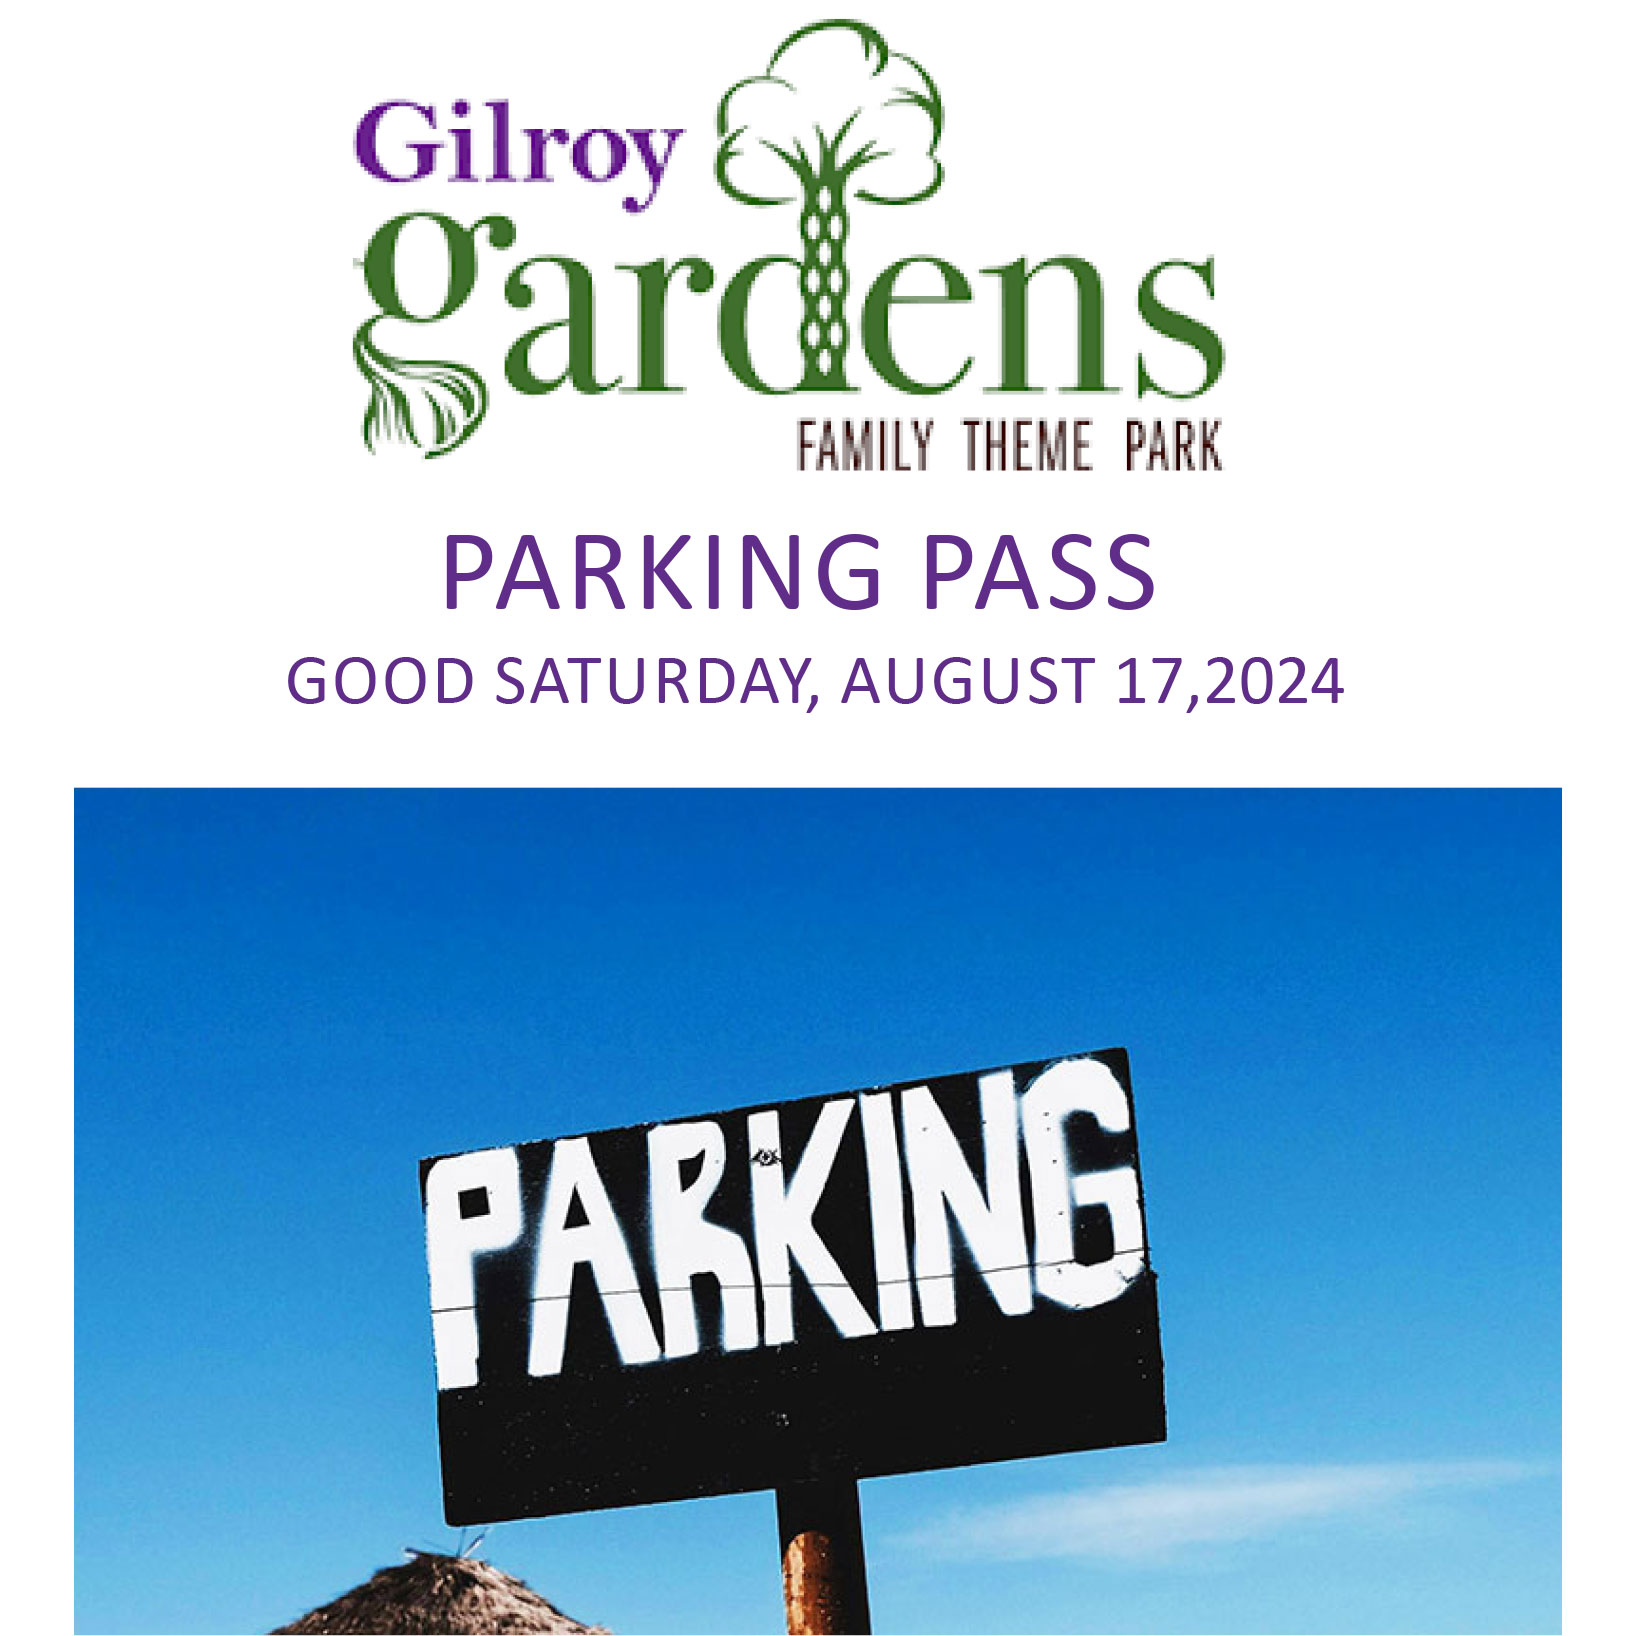 Gilroy Gardens Parking Pass Image